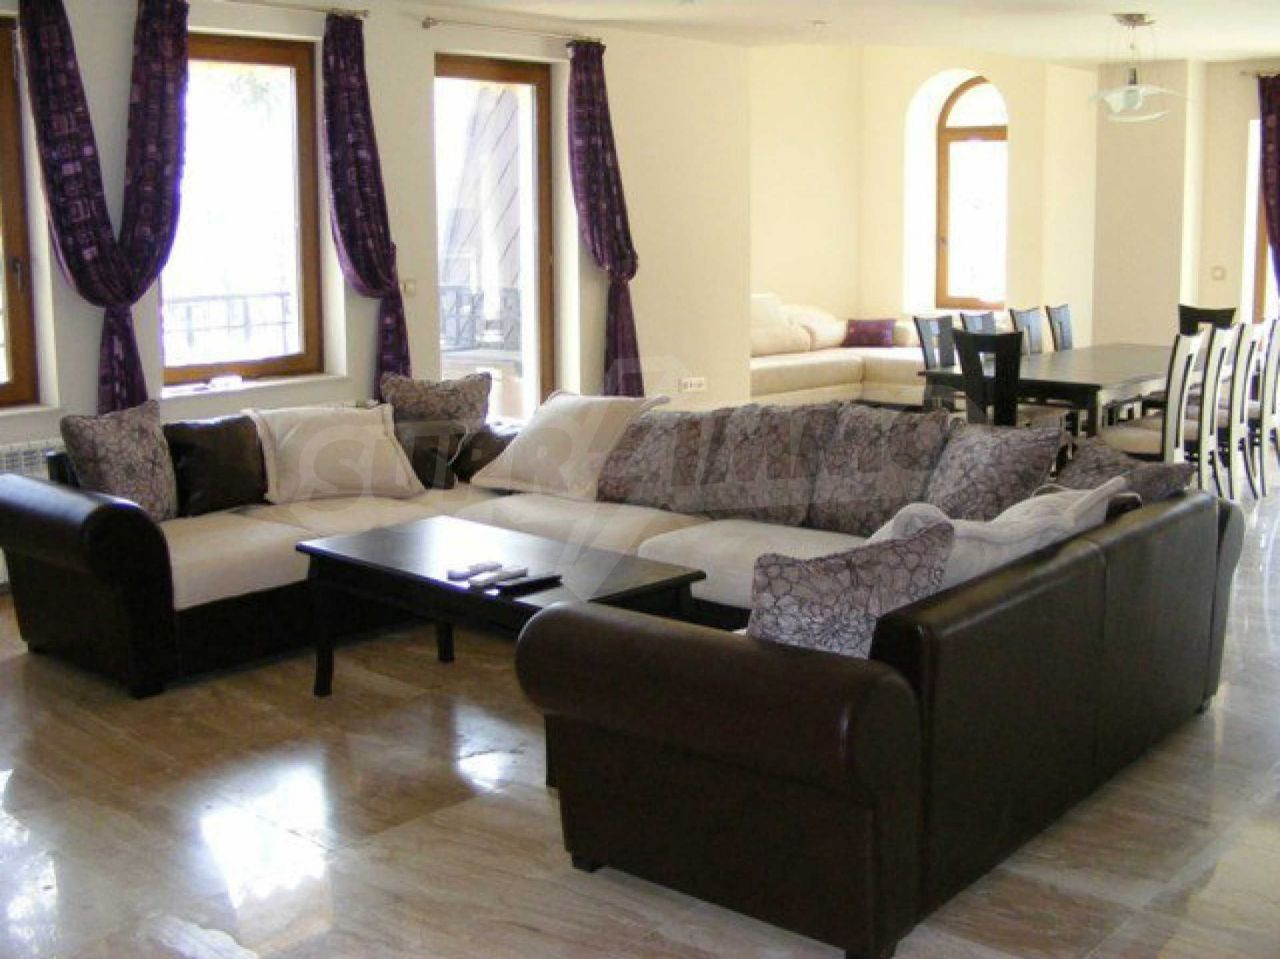 Apartment in Varna, Bulgaria, 214 sq.m - picture 1